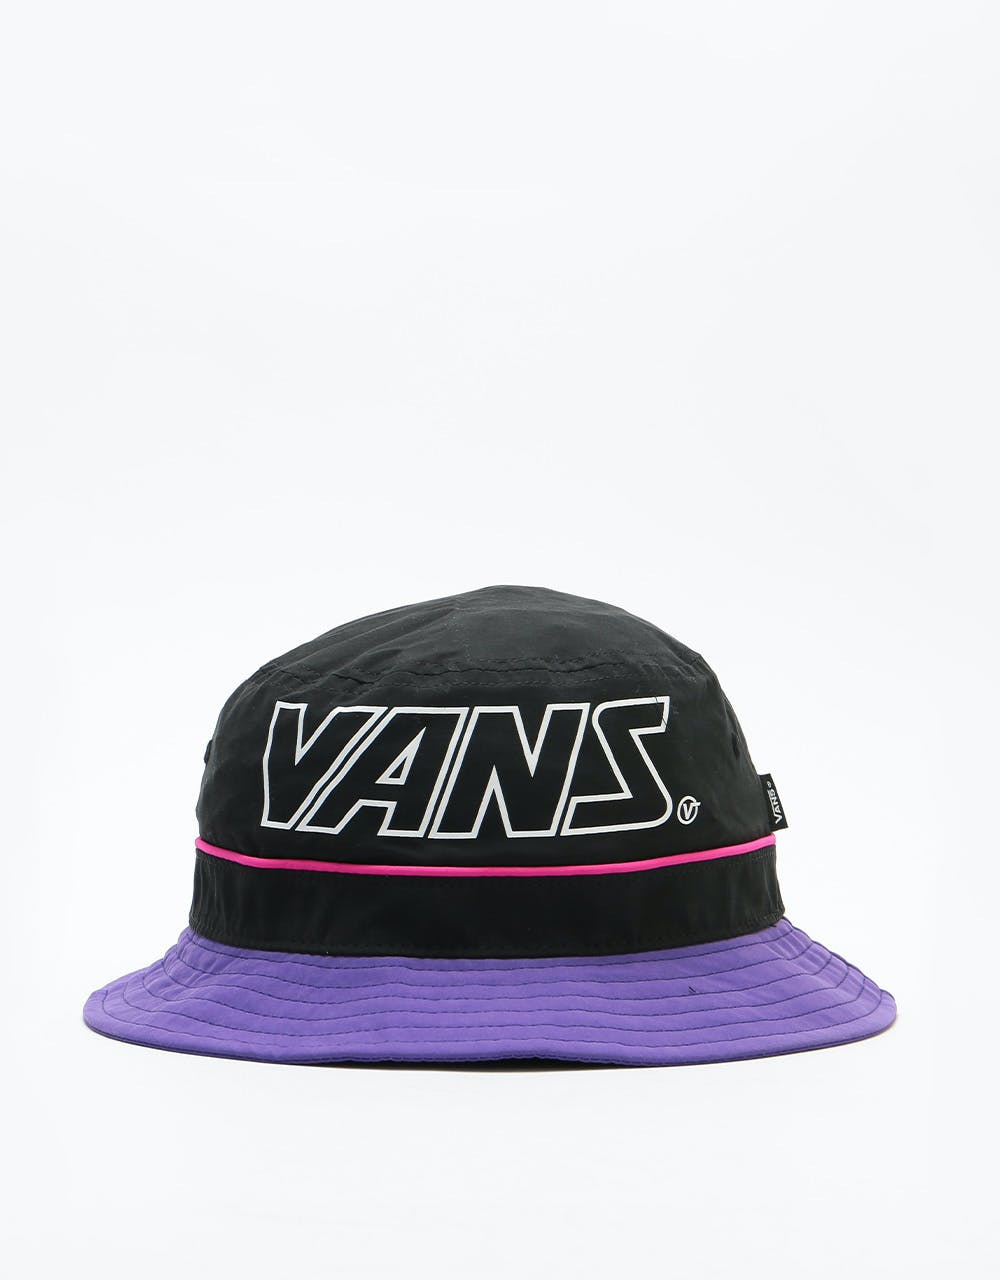 Vans Undertone Bucket Hat - Black/Heliotrope